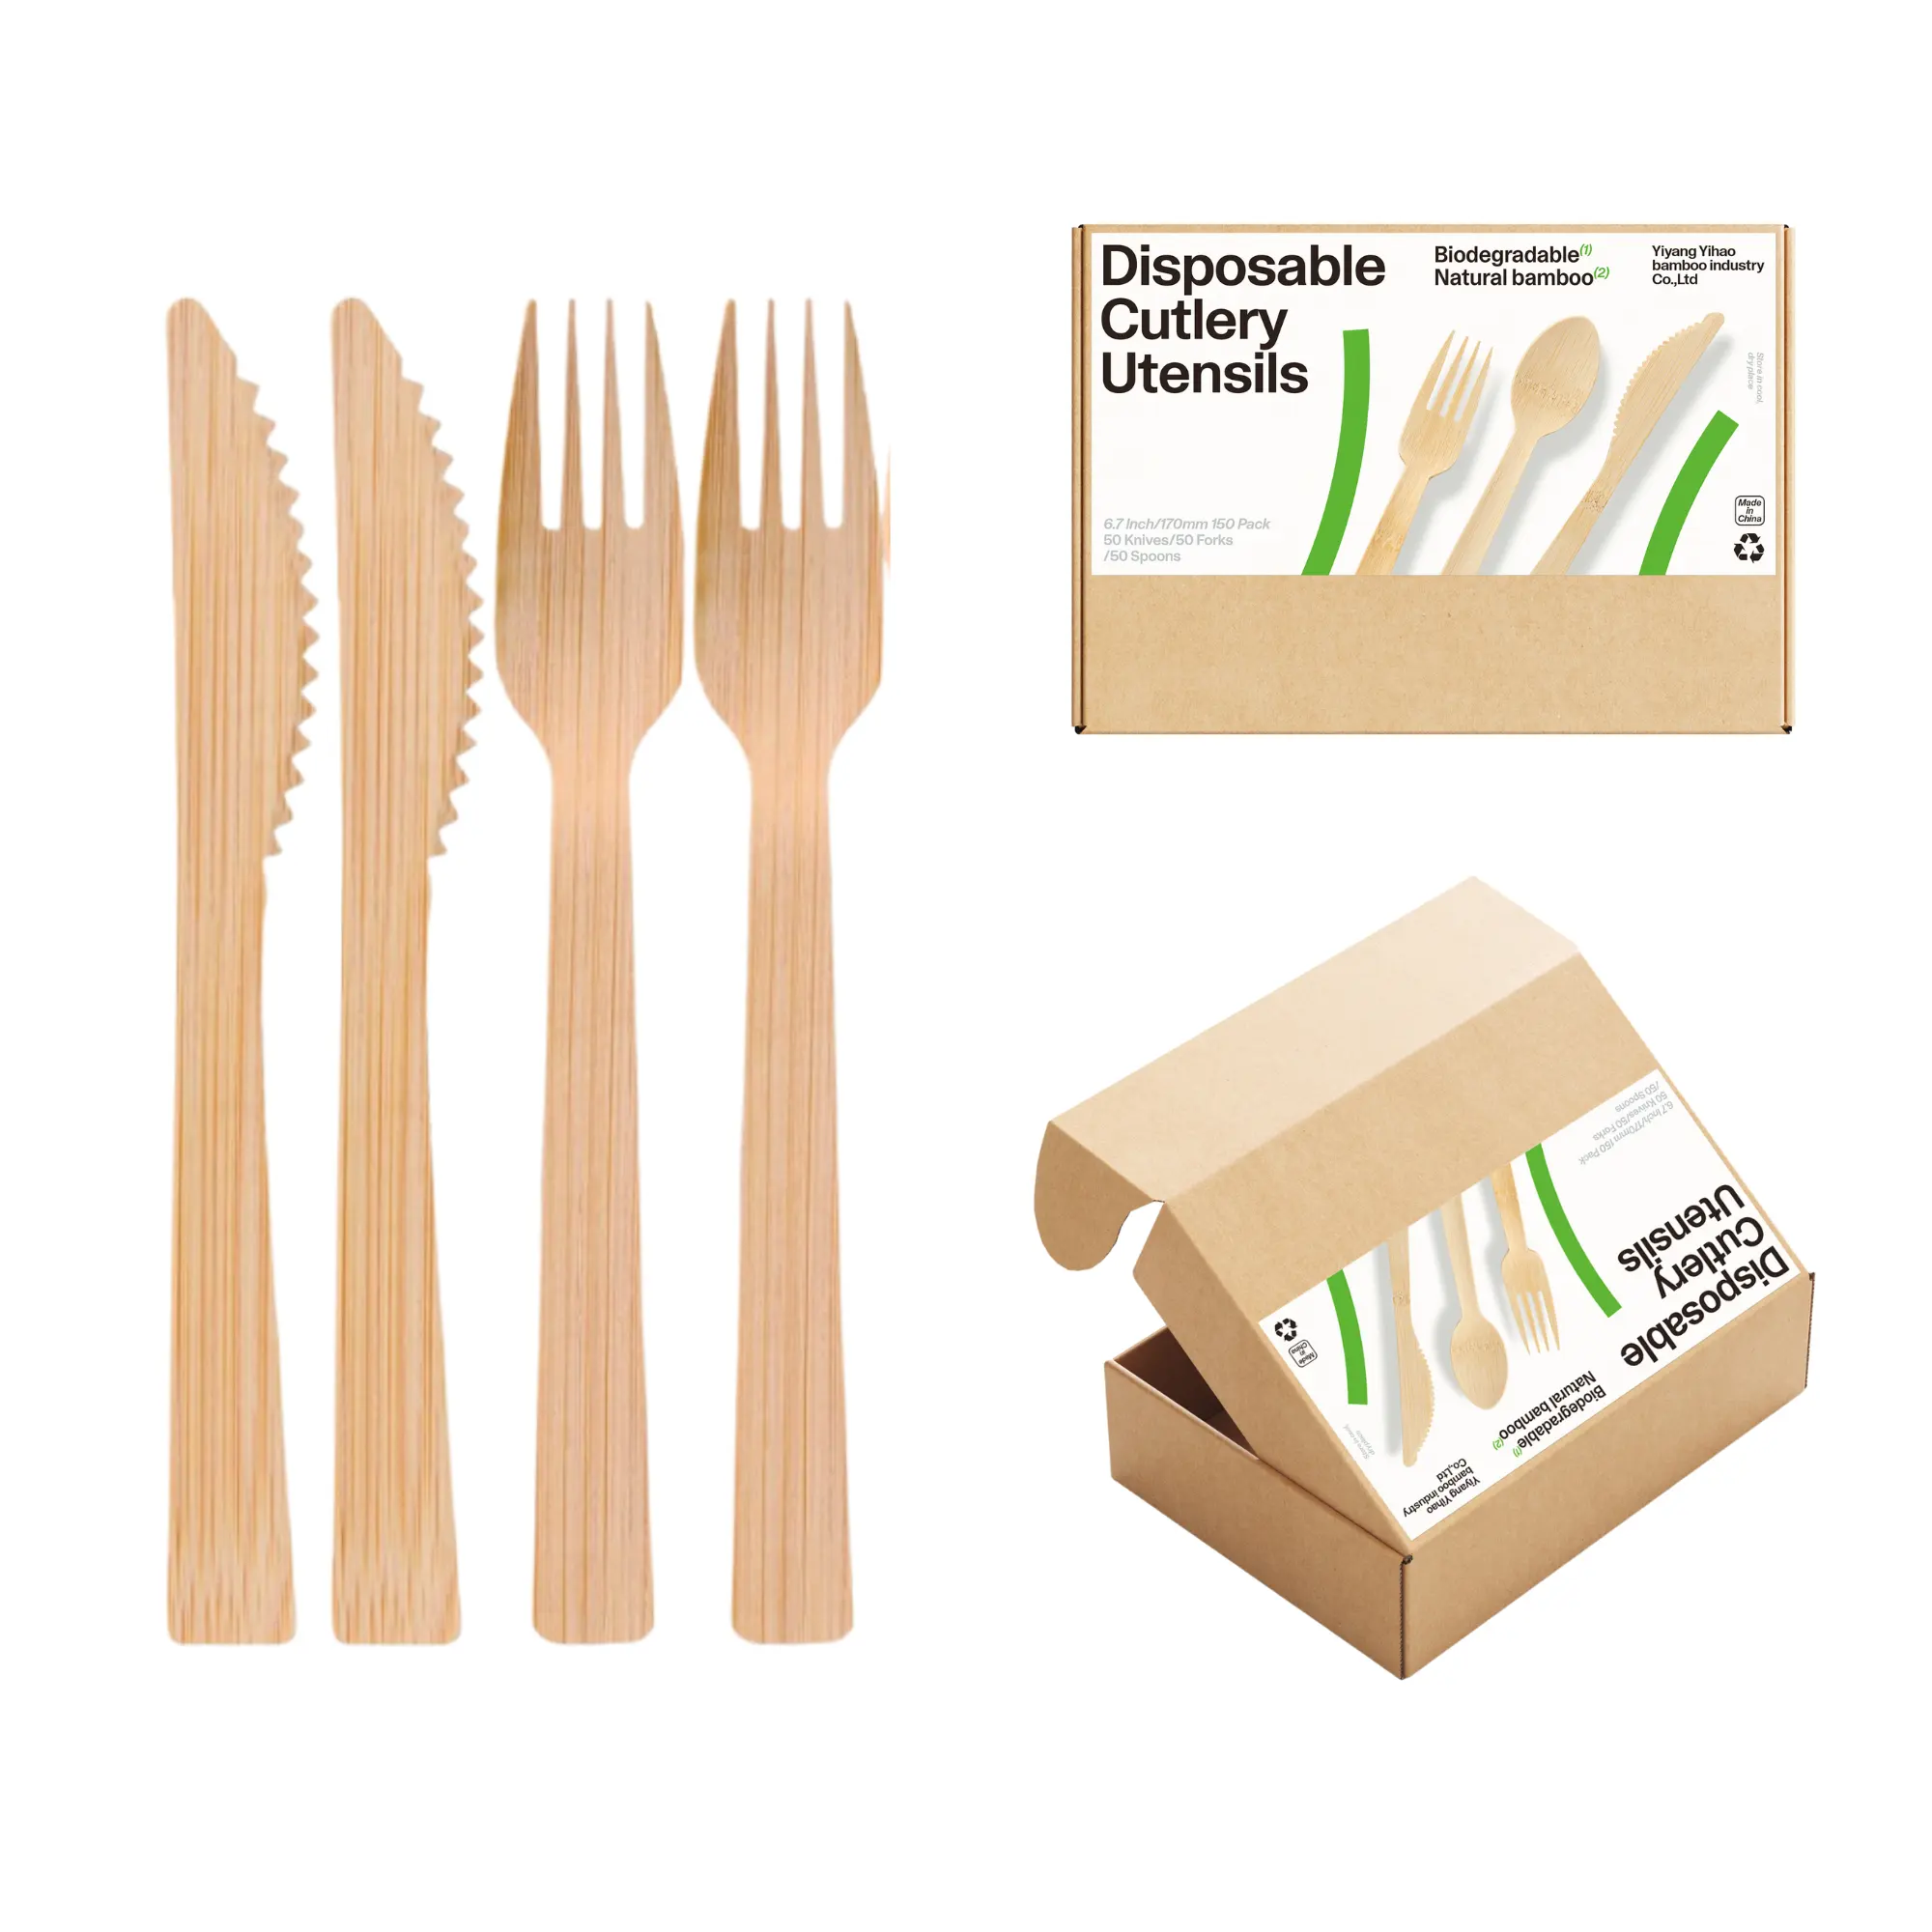 Talheres de bambu descartáveis com contagem 160 | Conjunto utensílio ecológico, biodegradável e resistente, colher de garfo faca de bambu